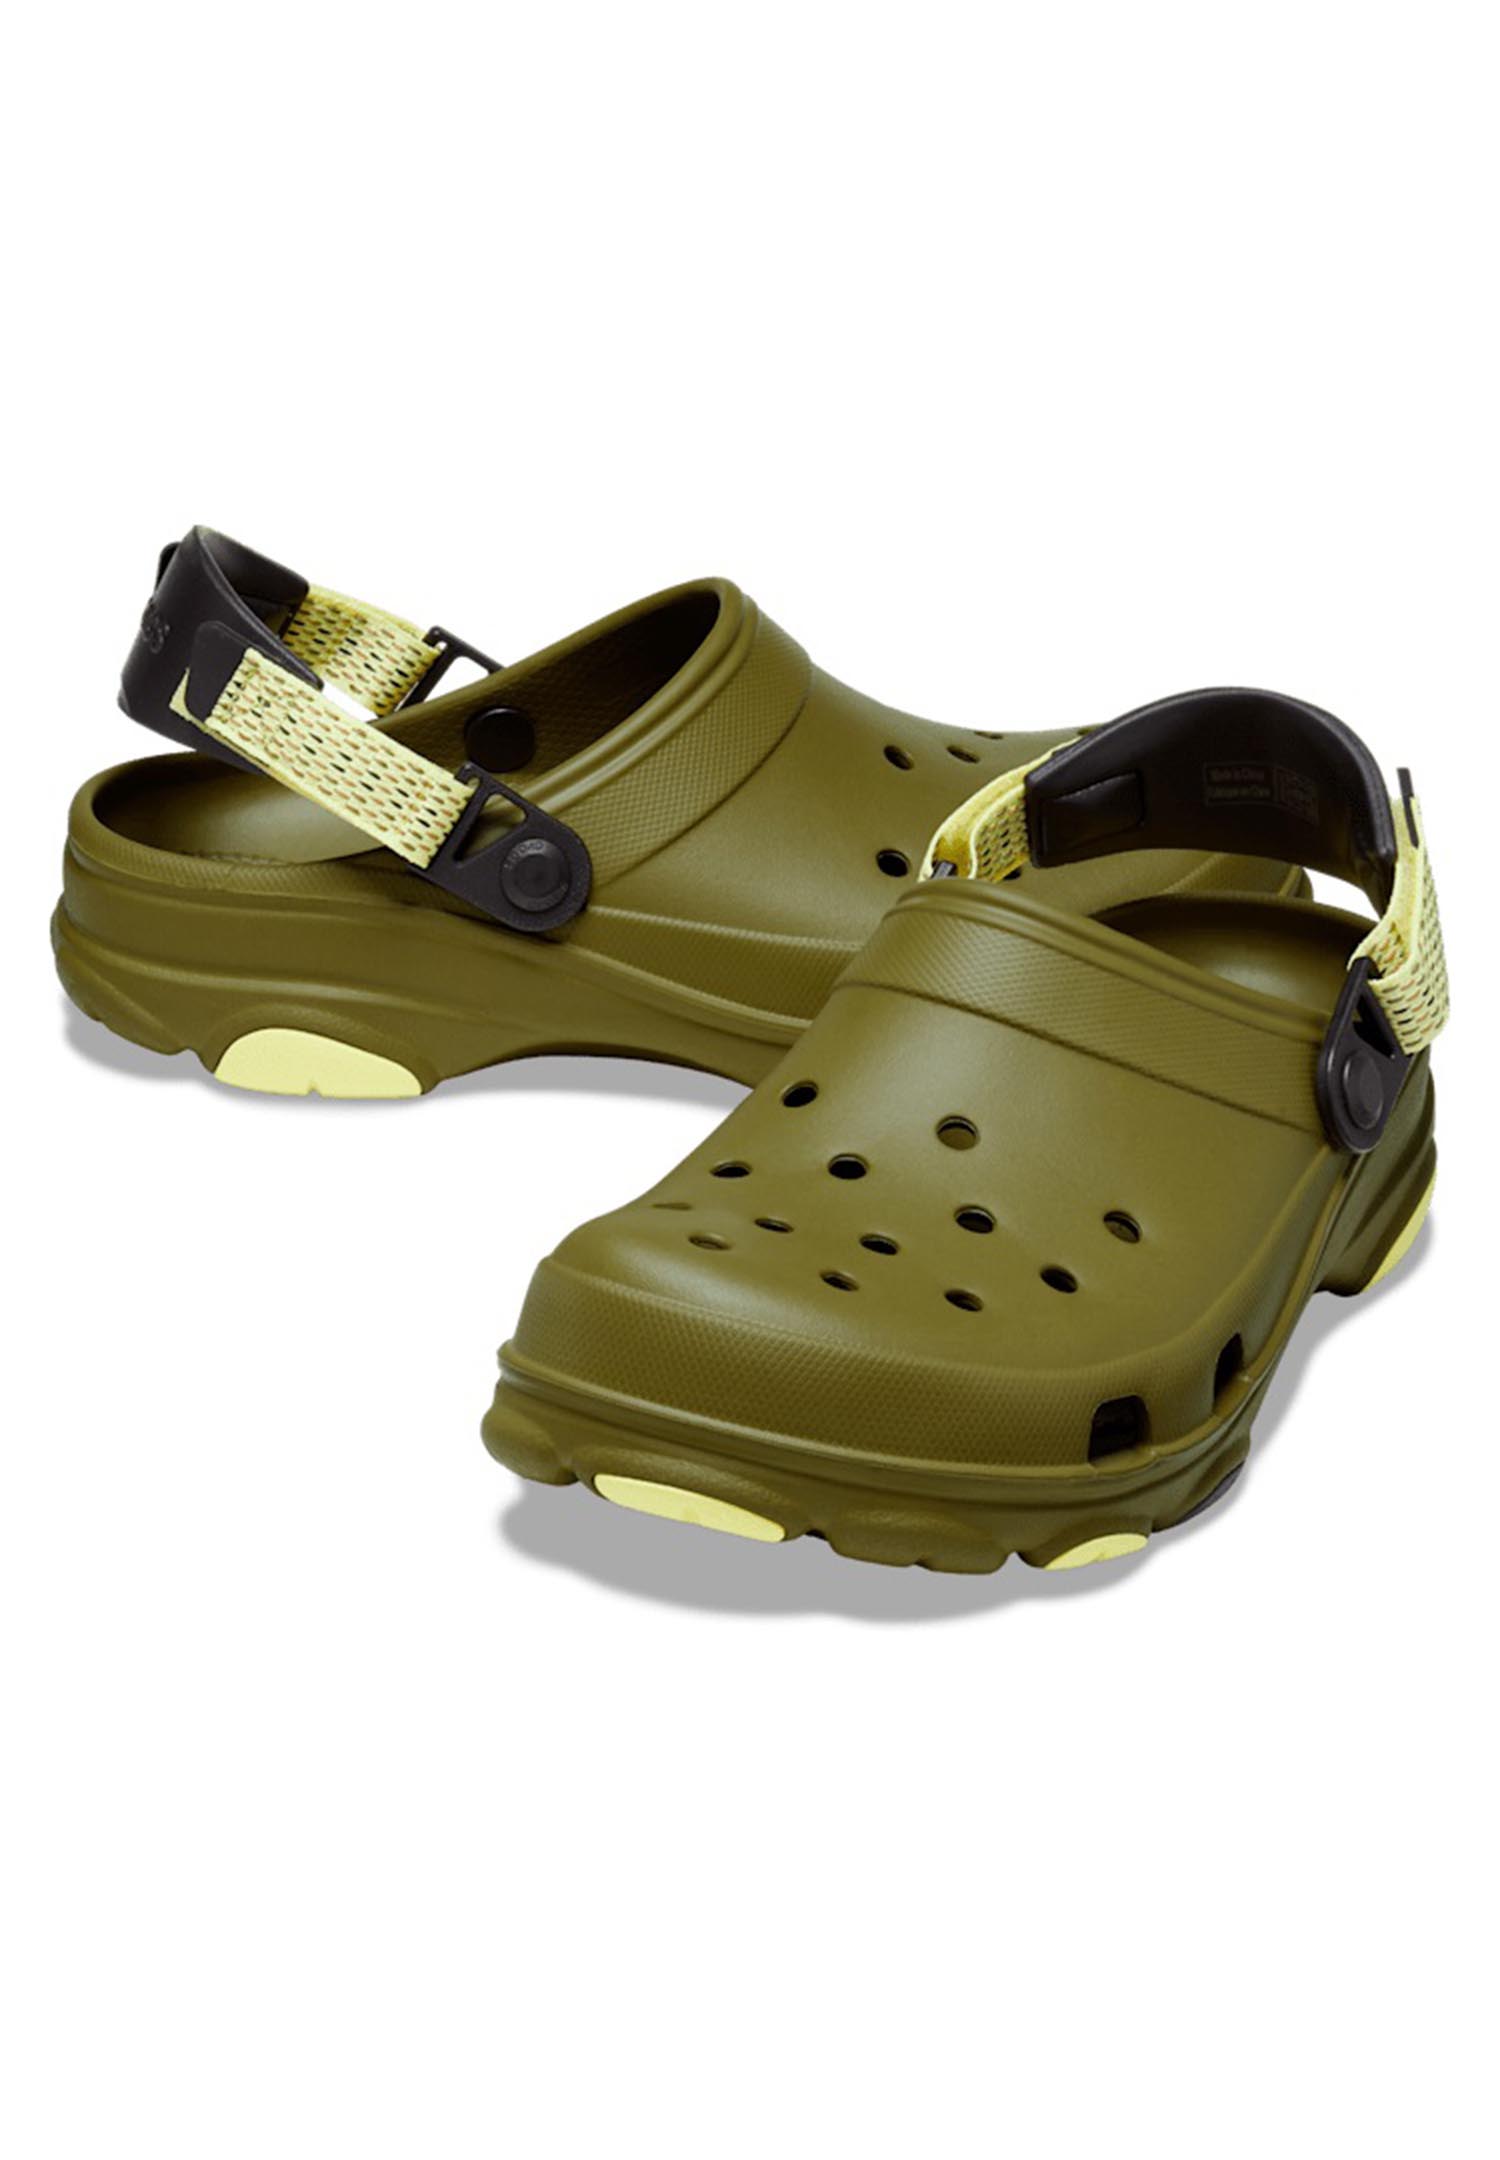 Crocs Classic All Terrain Clog Roomy Fit Unisex Sandale Hausschuh 206340 grün von Crocs